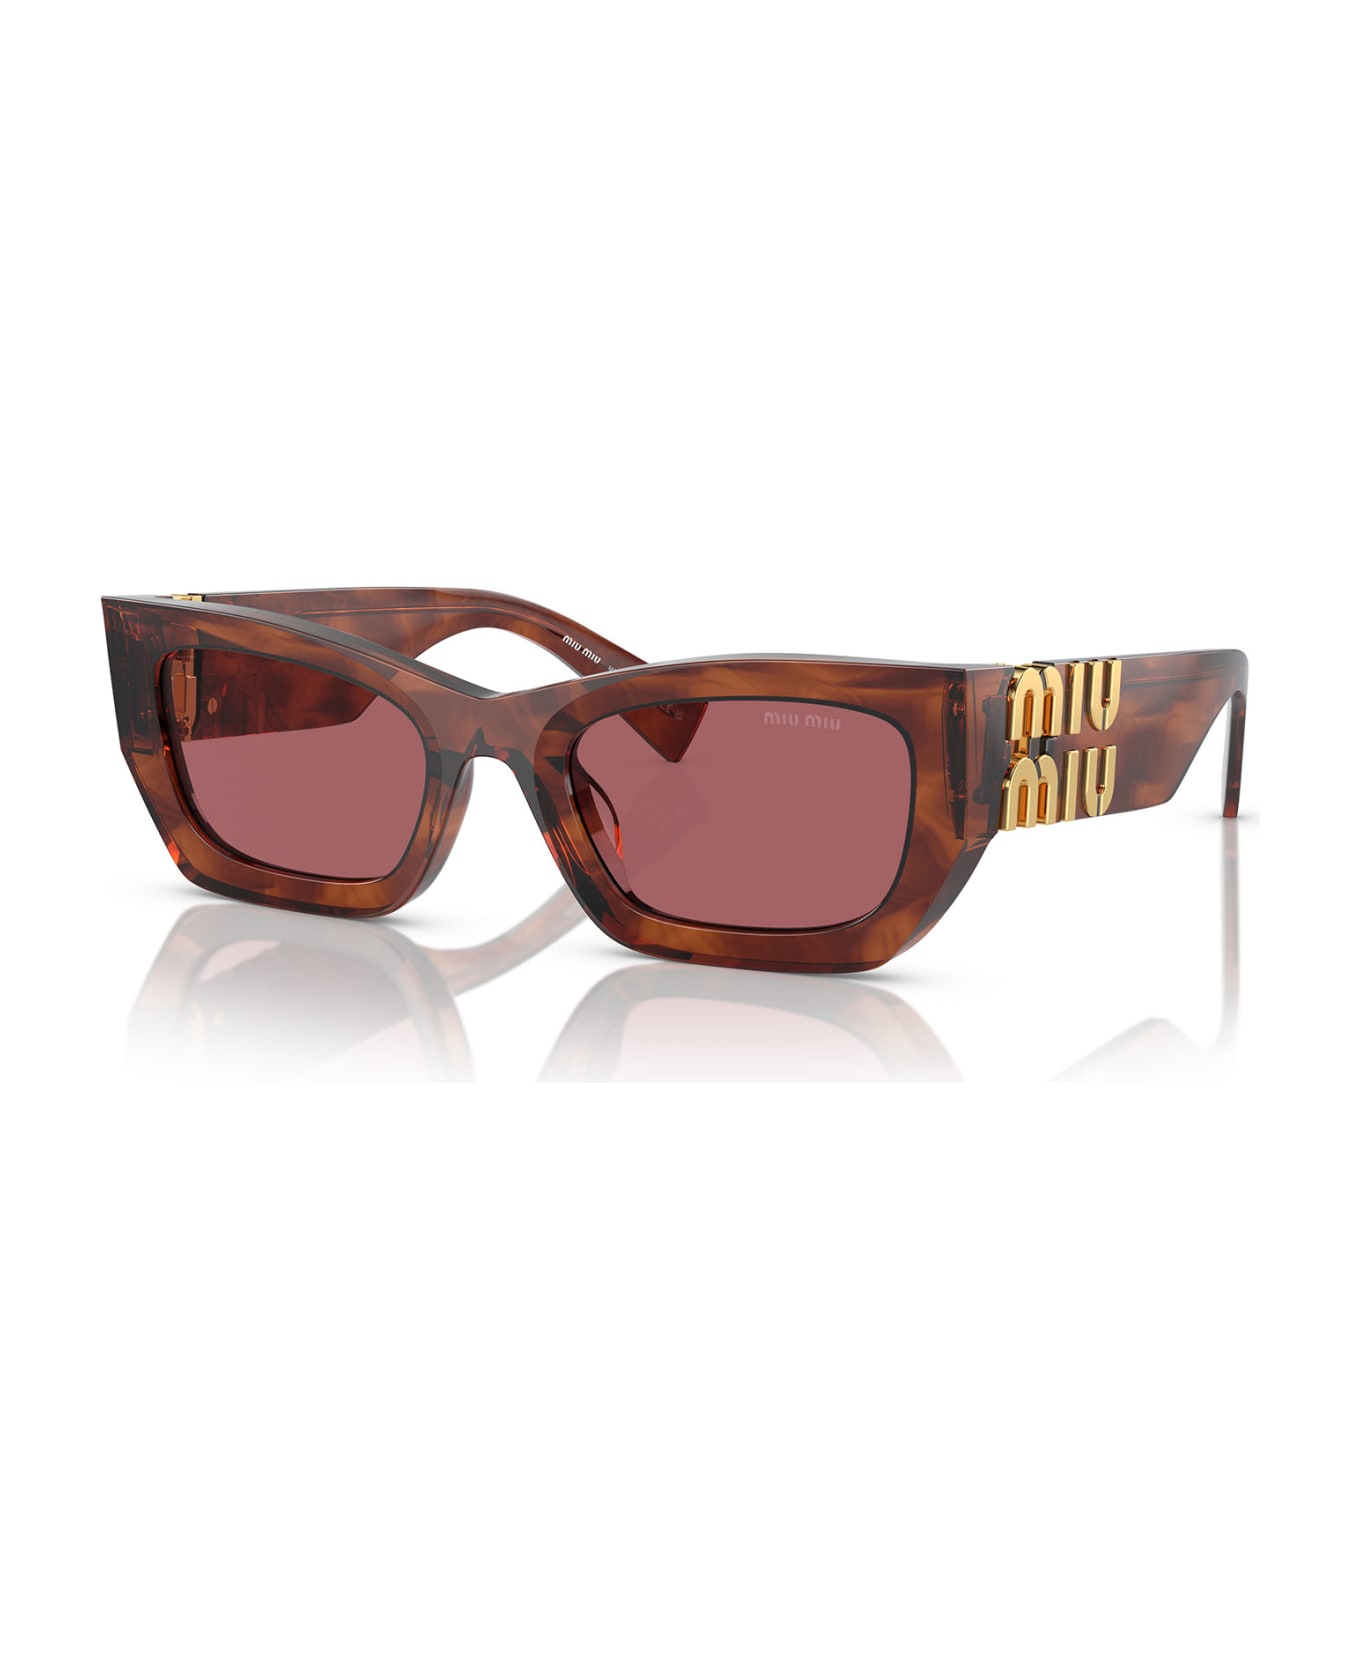 Miu Miu Eyewear Mu 09ws Striped Tobacco Sunglasses - Striped Tobacco